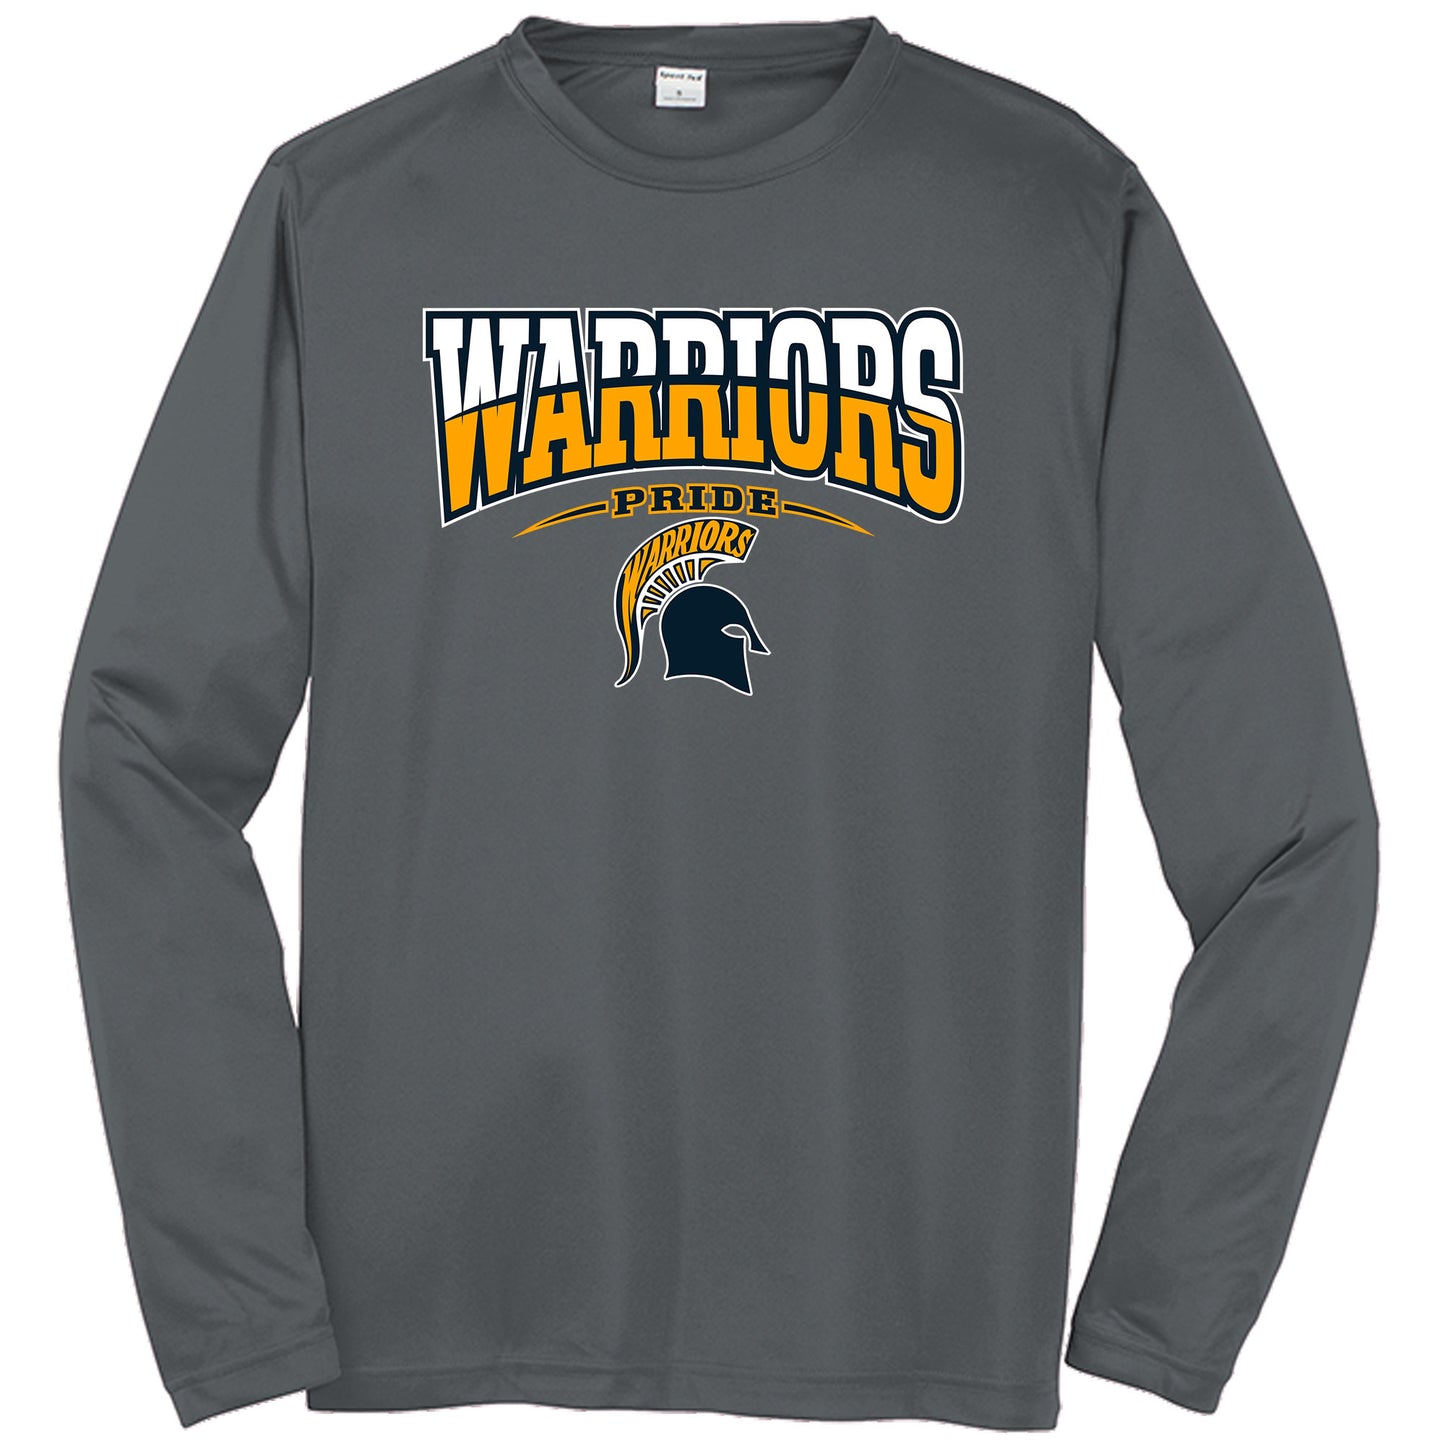 Steinbrenner High School Long Sleeve Drifit Shirt "Warriors Logo"